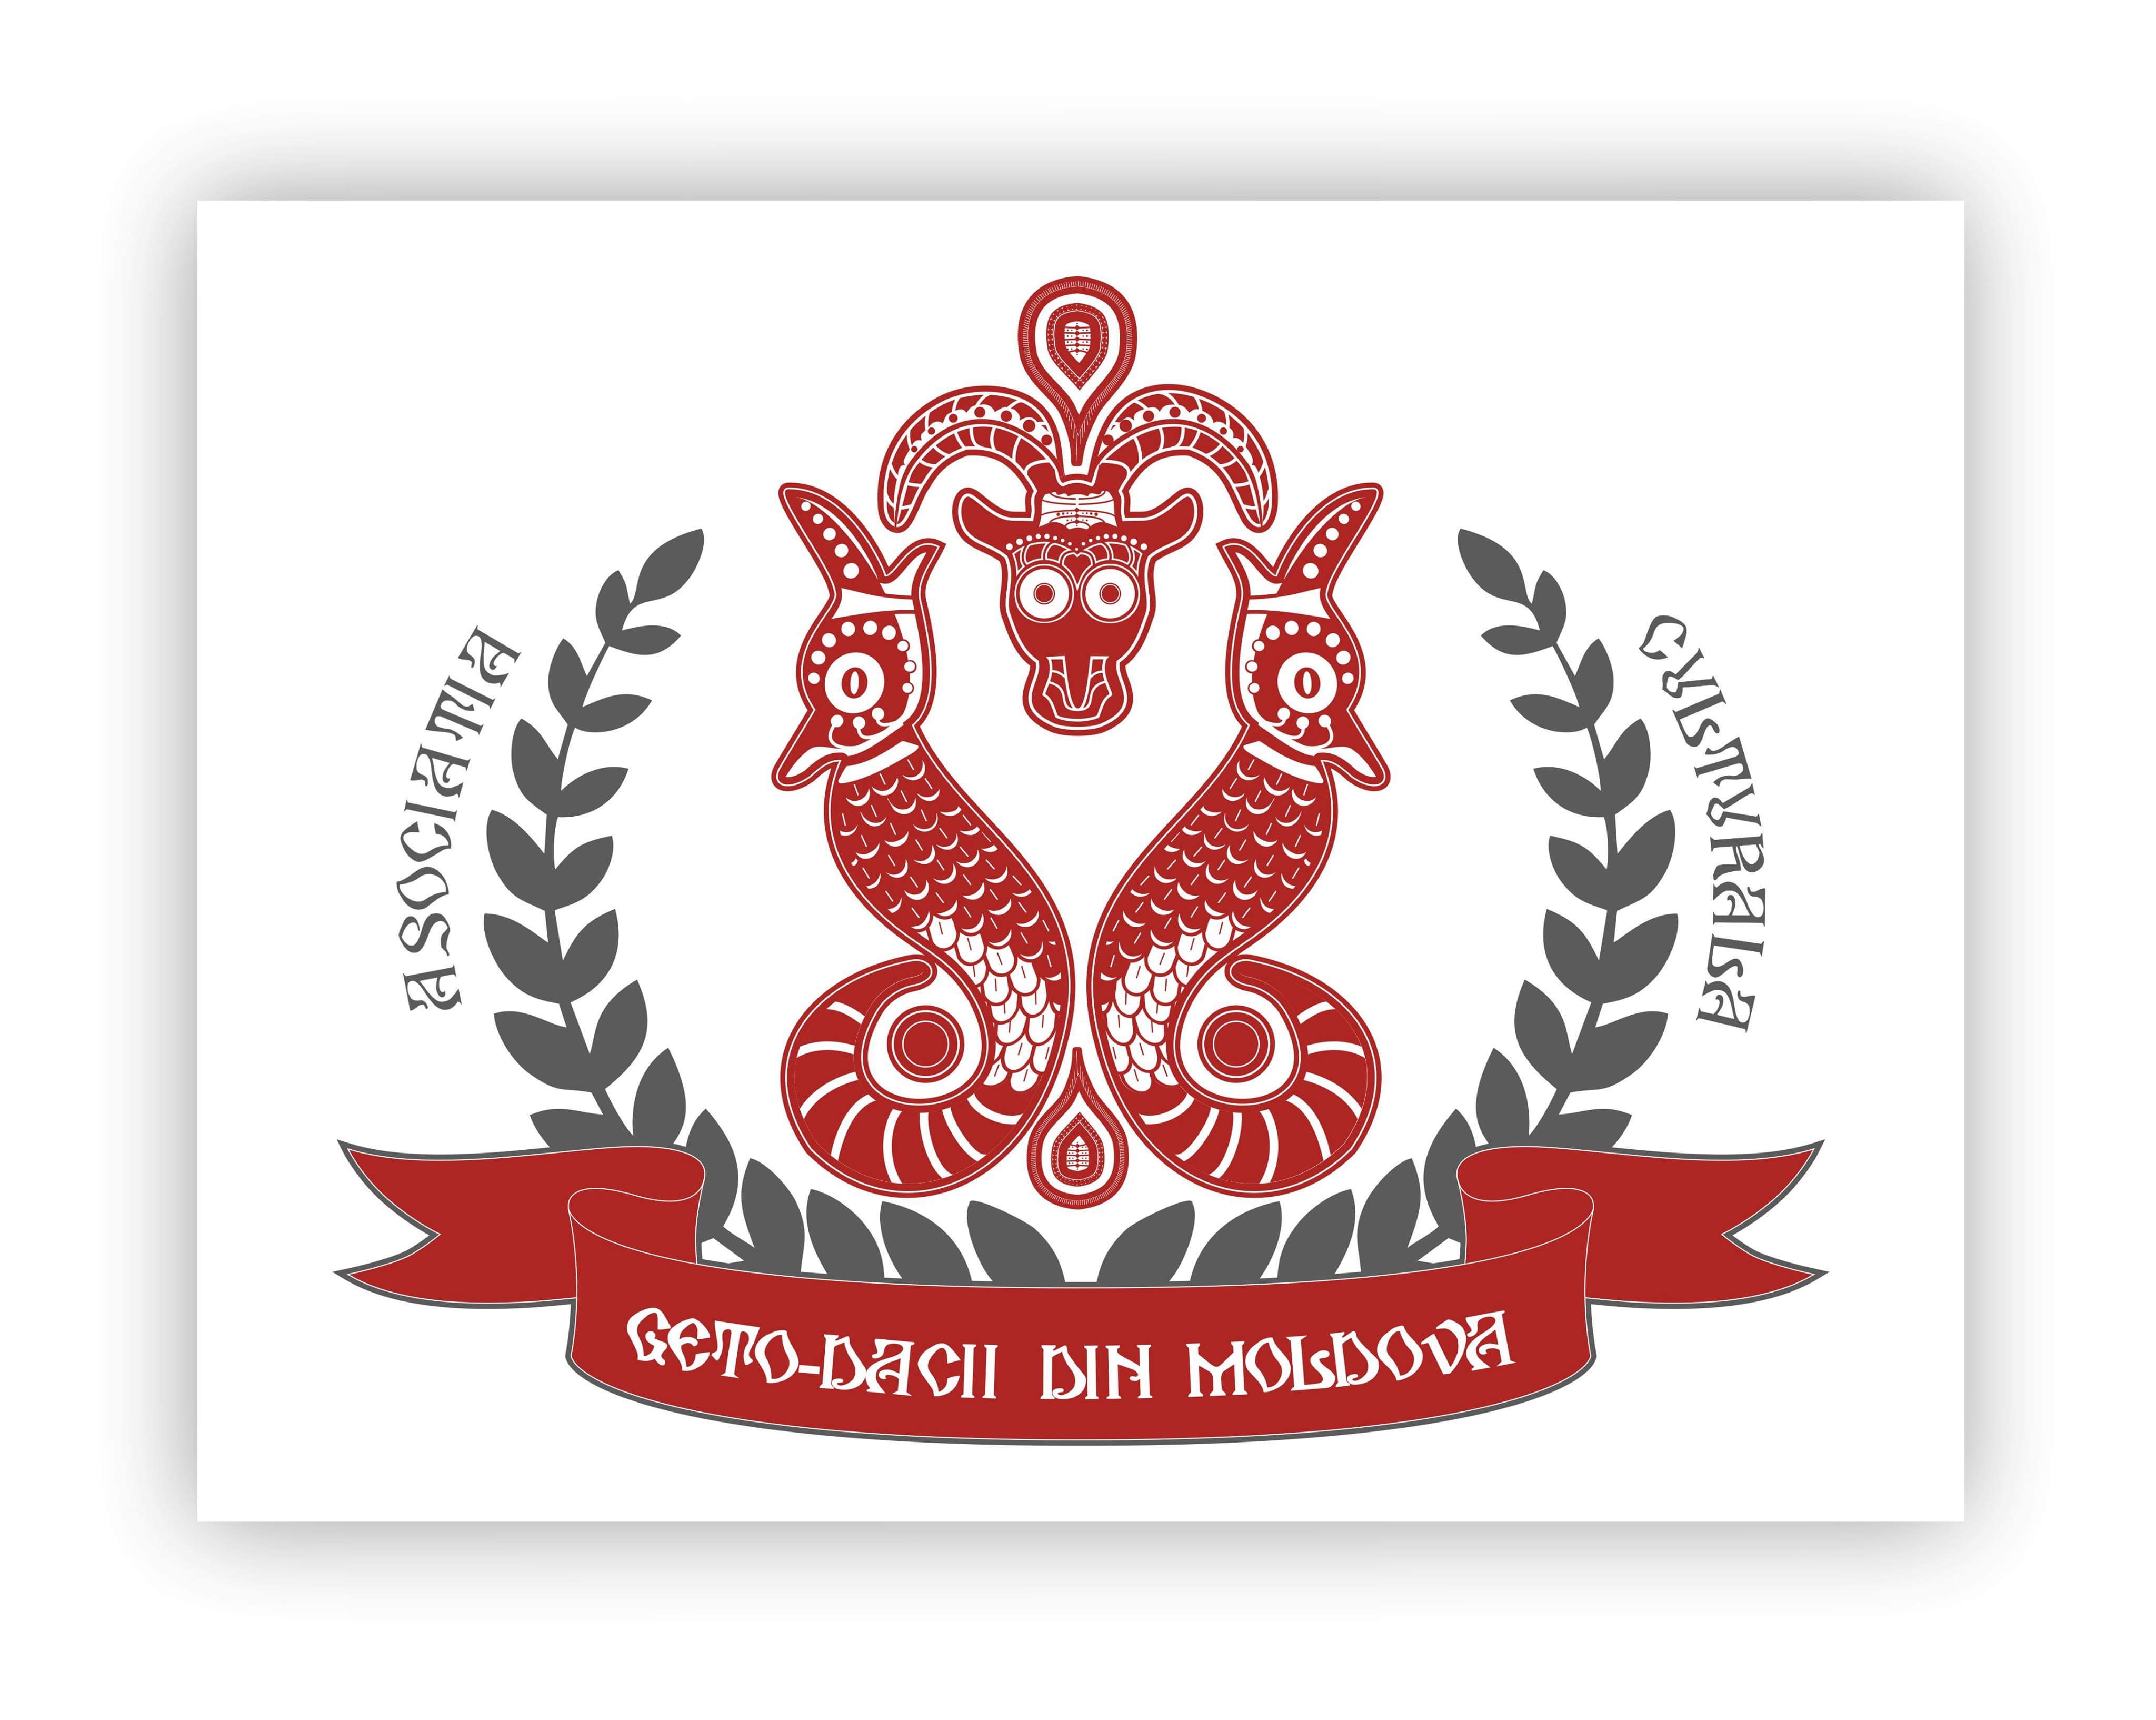 Asociatia Culturala Geto-Dacii din Moldova logo